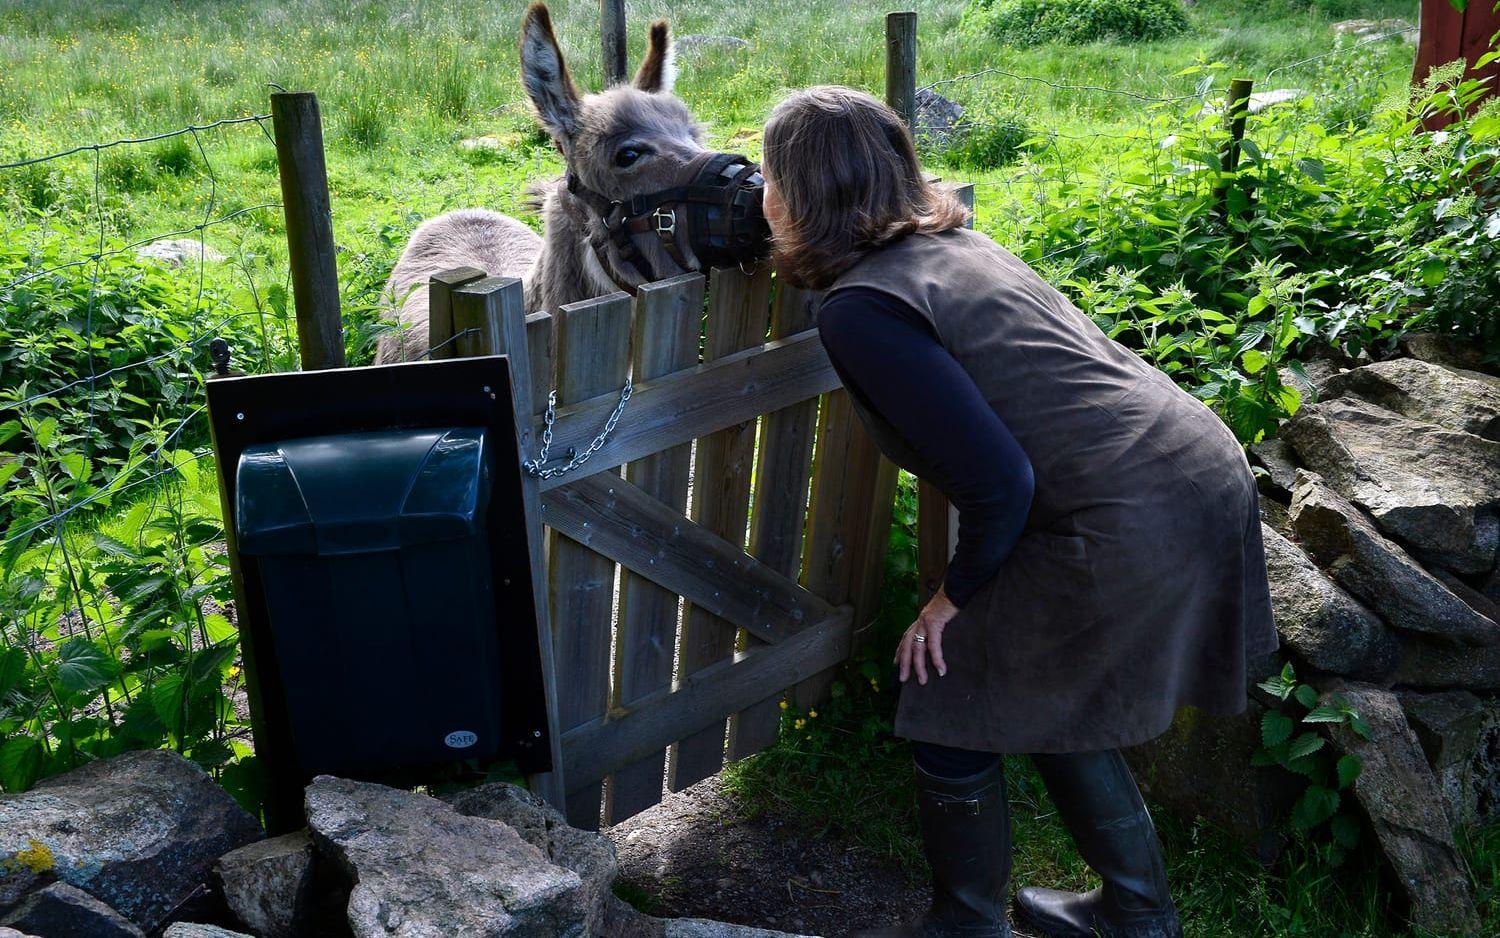 Puss Bosse. Gill ger åsnan en puss efter att han har släppts ut i hagen. På gården trivs både människor och djur. Foto: Annika Karlbom